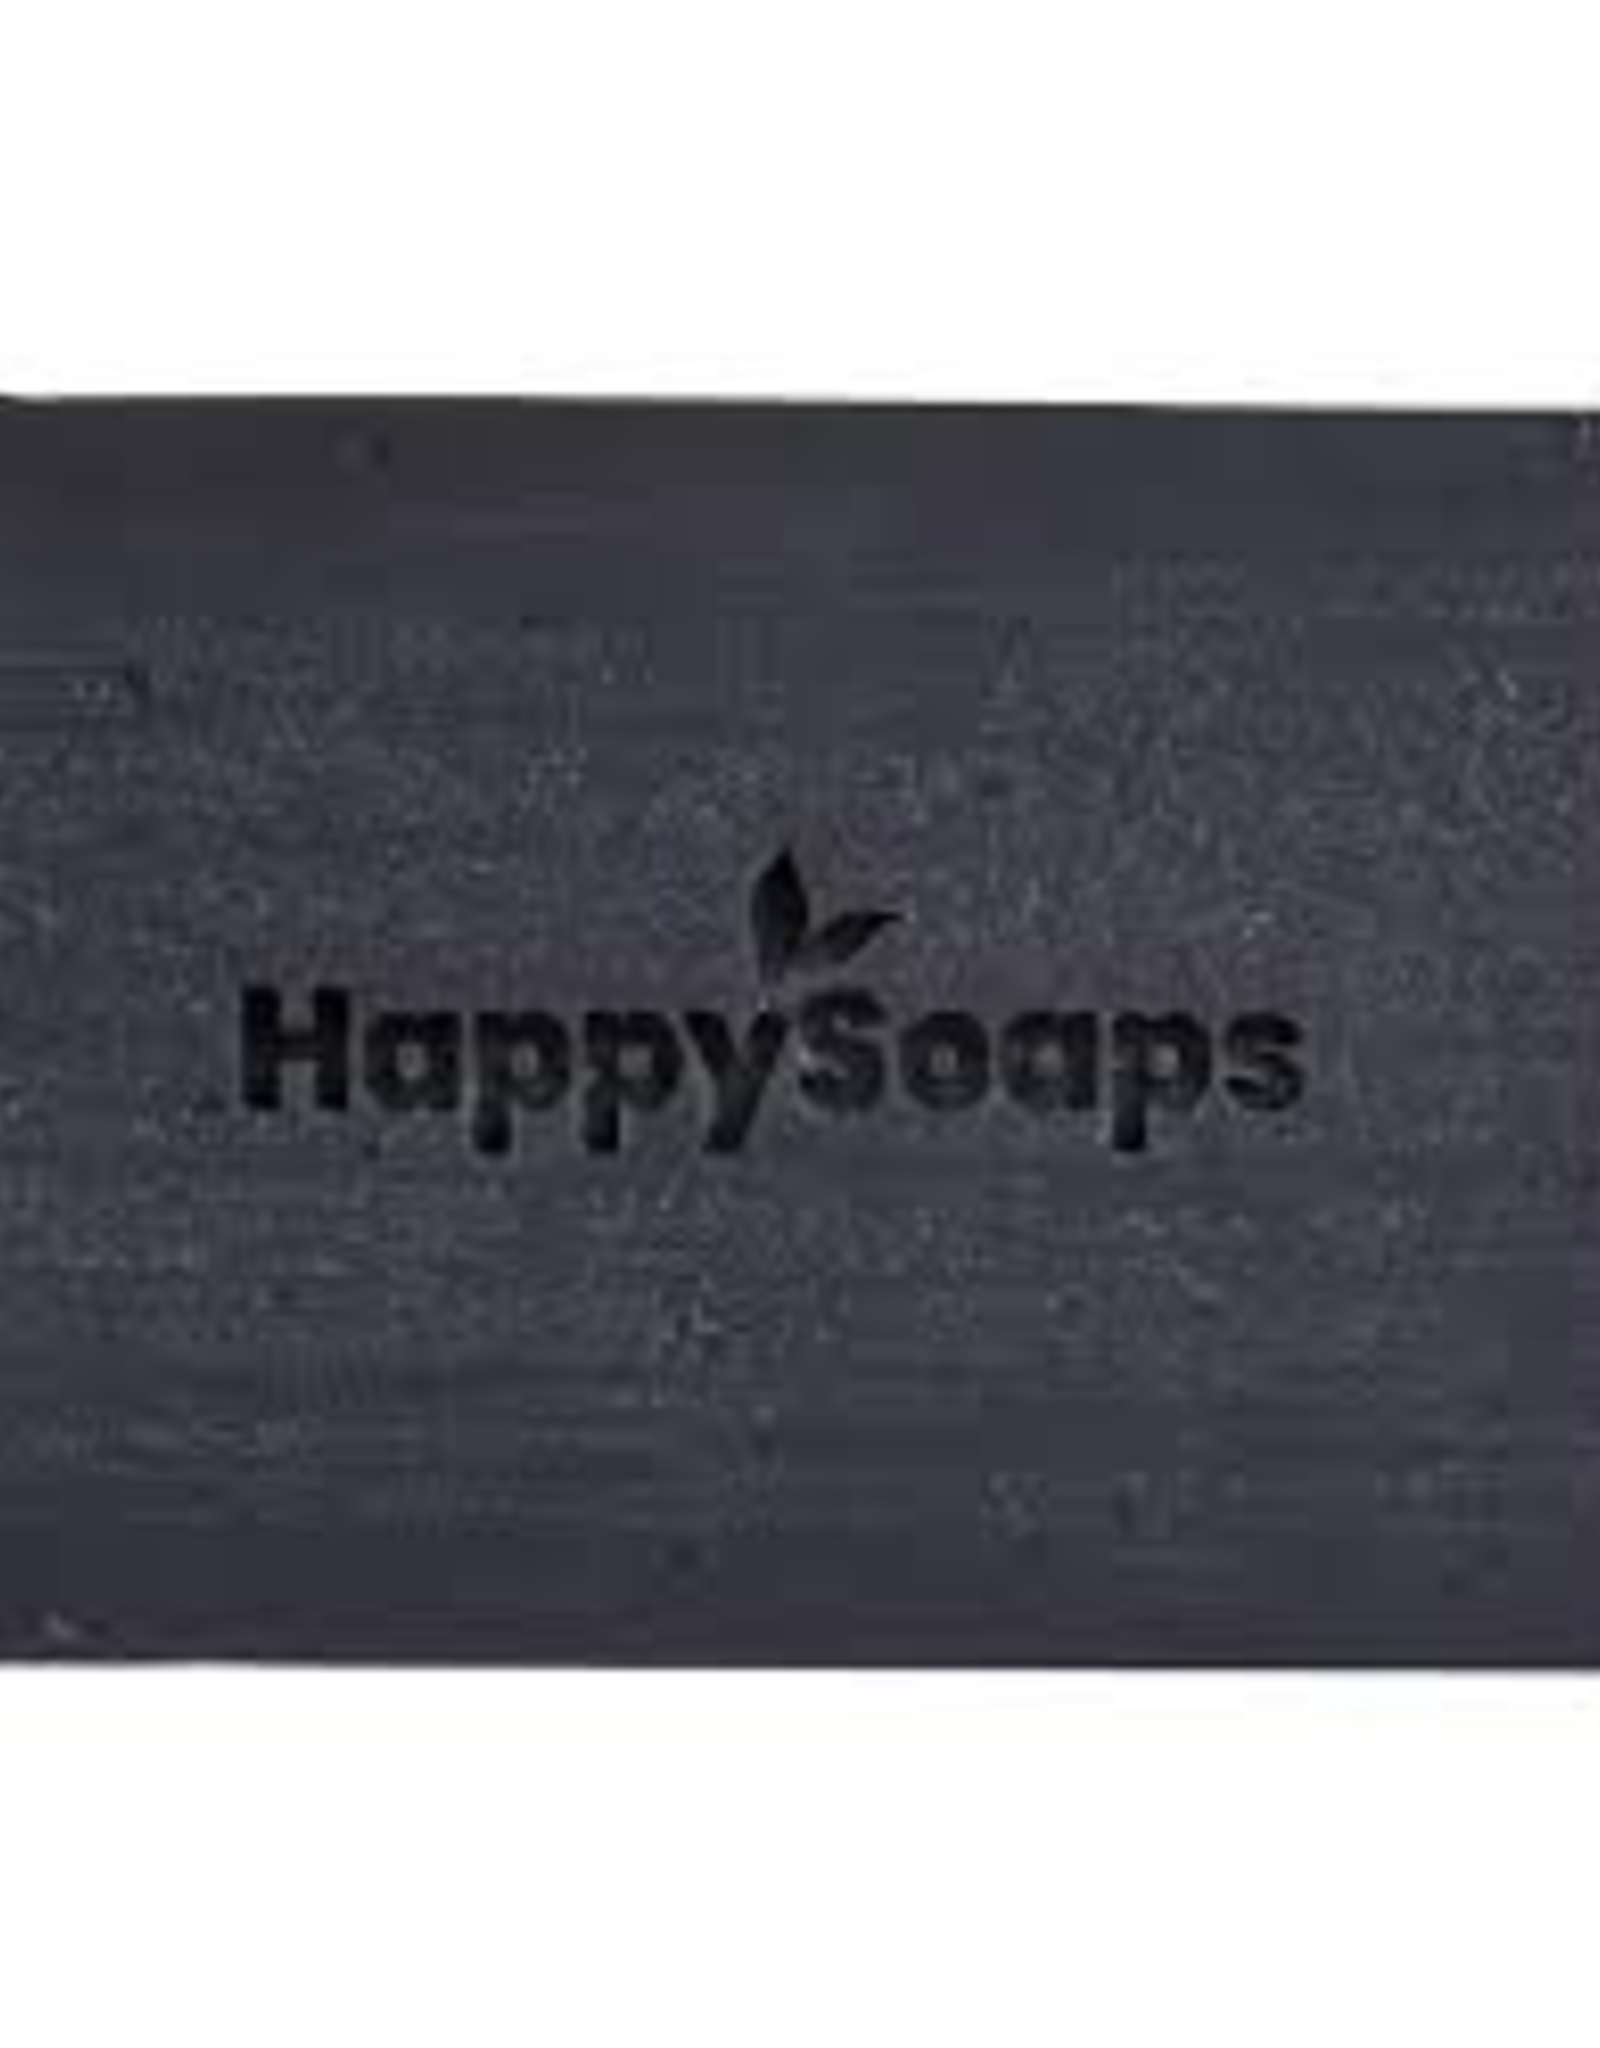 HappySoaps Happy Body Bar kruidnagel en Salie 100gram - HappySoaps